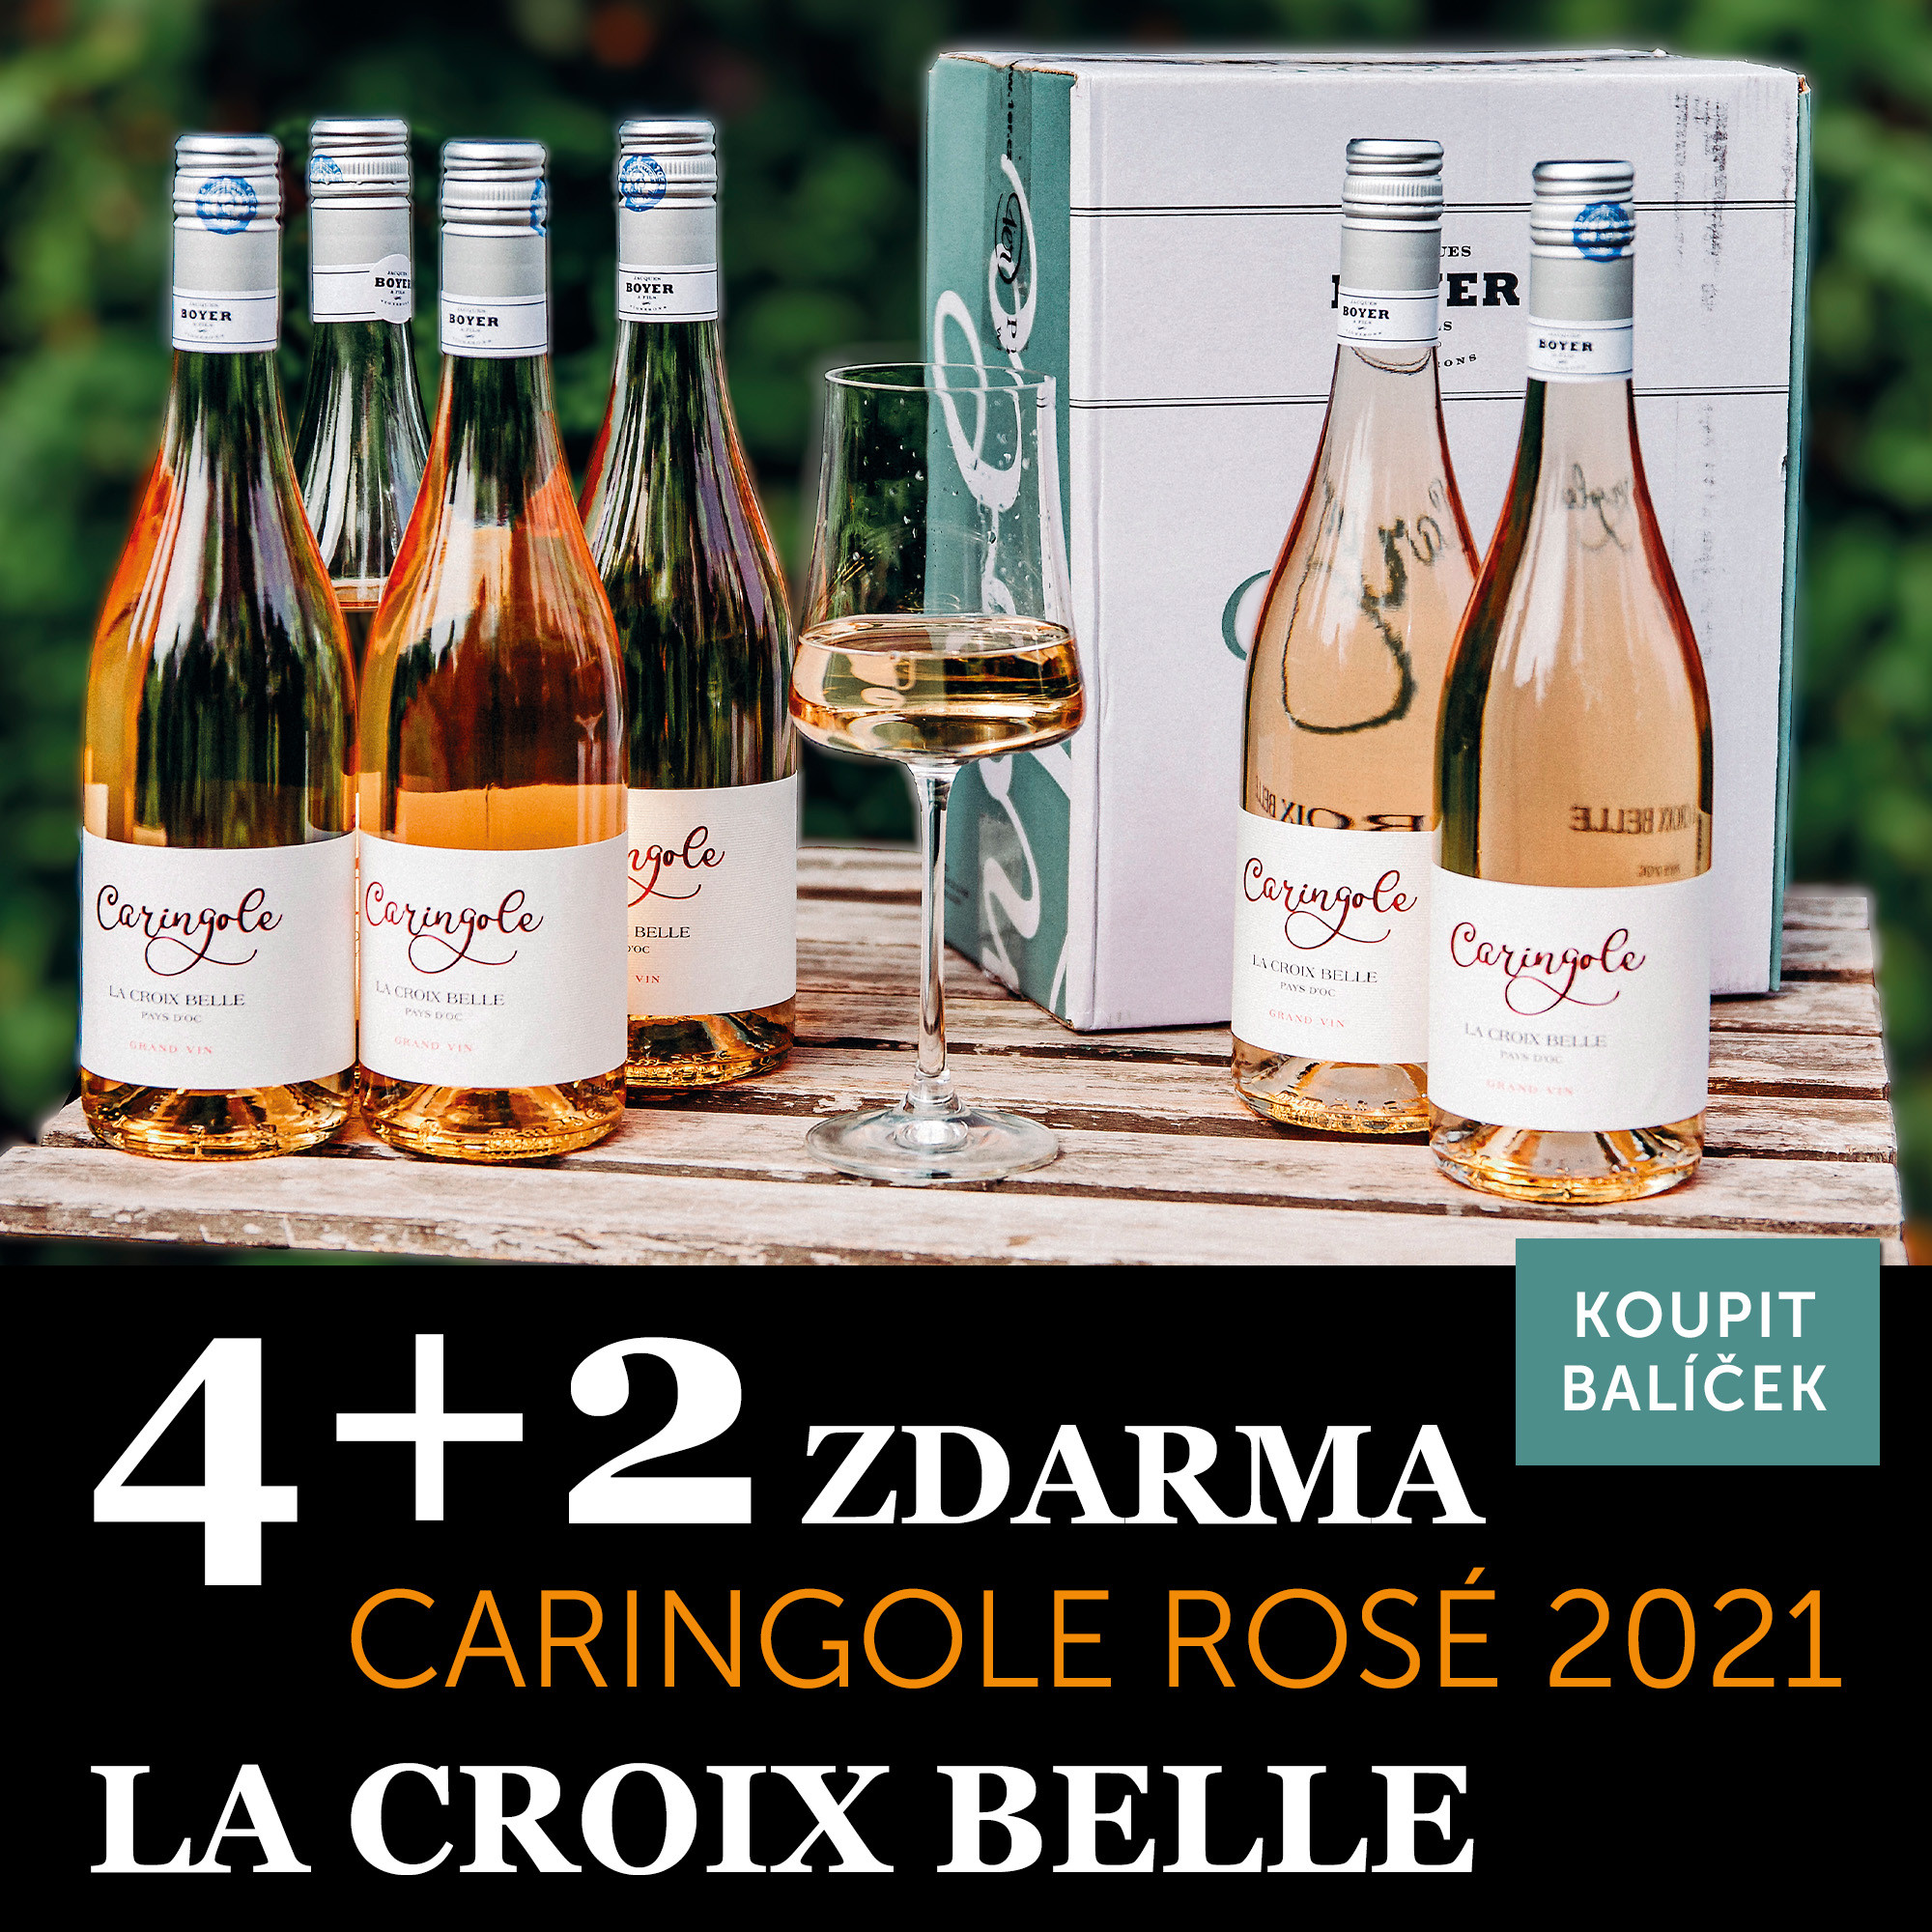 Víno měsíce června - Carignole rosé 4+2 zdarma